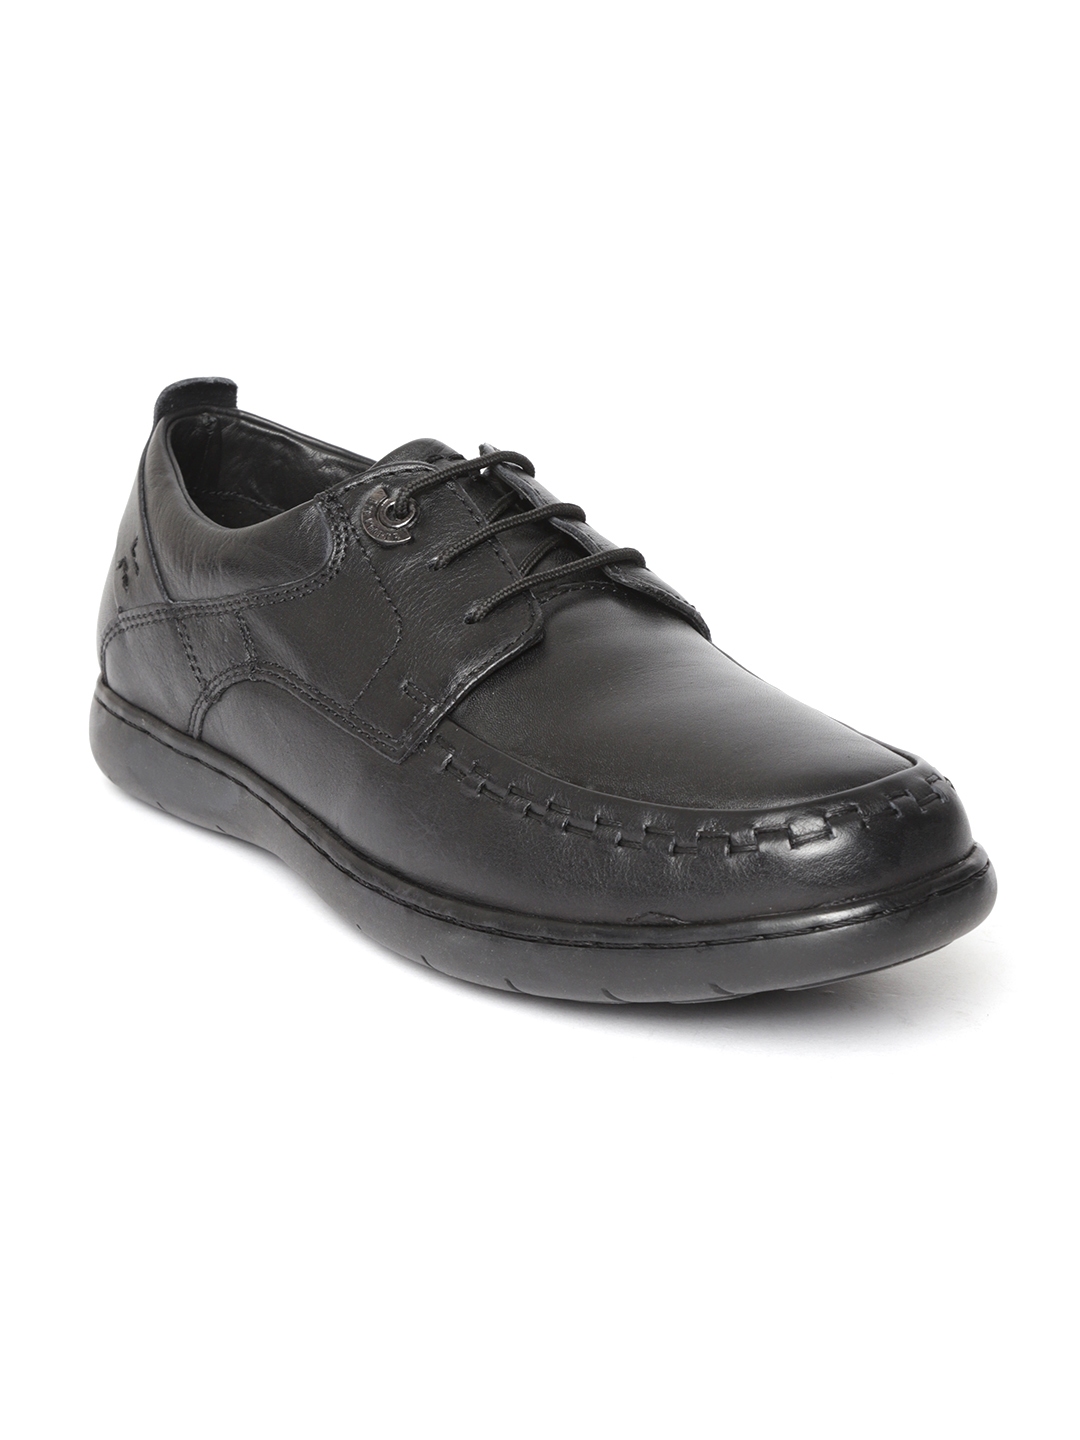 Buy Lee Cooper Men Black Leather Semiformal Derbys - Formal Shoes for ...